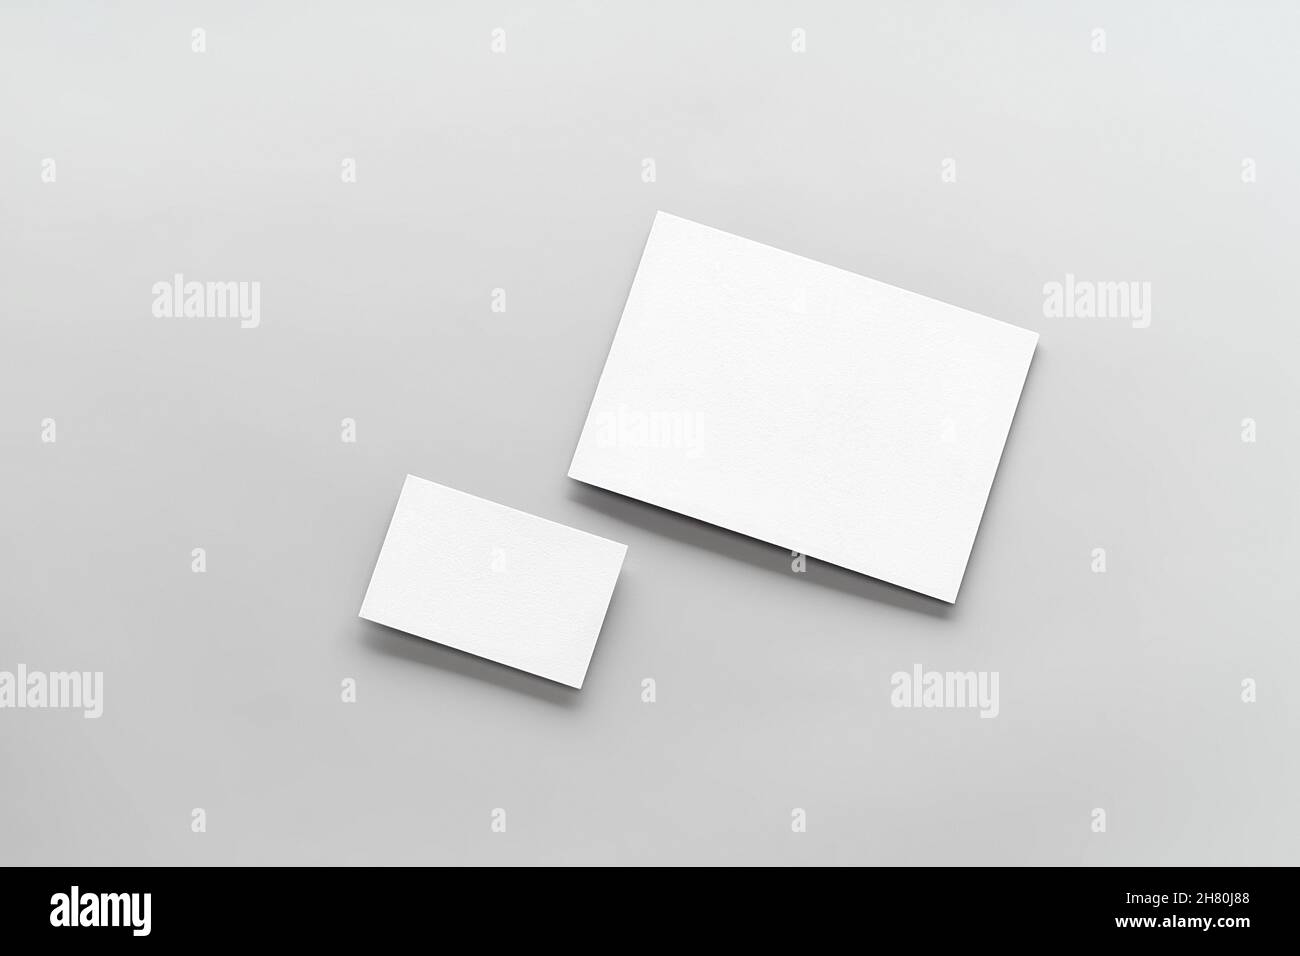 Modèle moderne de maquette de carte de visite sur fond gris.Vue de dessus plat de deux cartes.Maquette pour la marque, la publicité et le design Banque D'Images